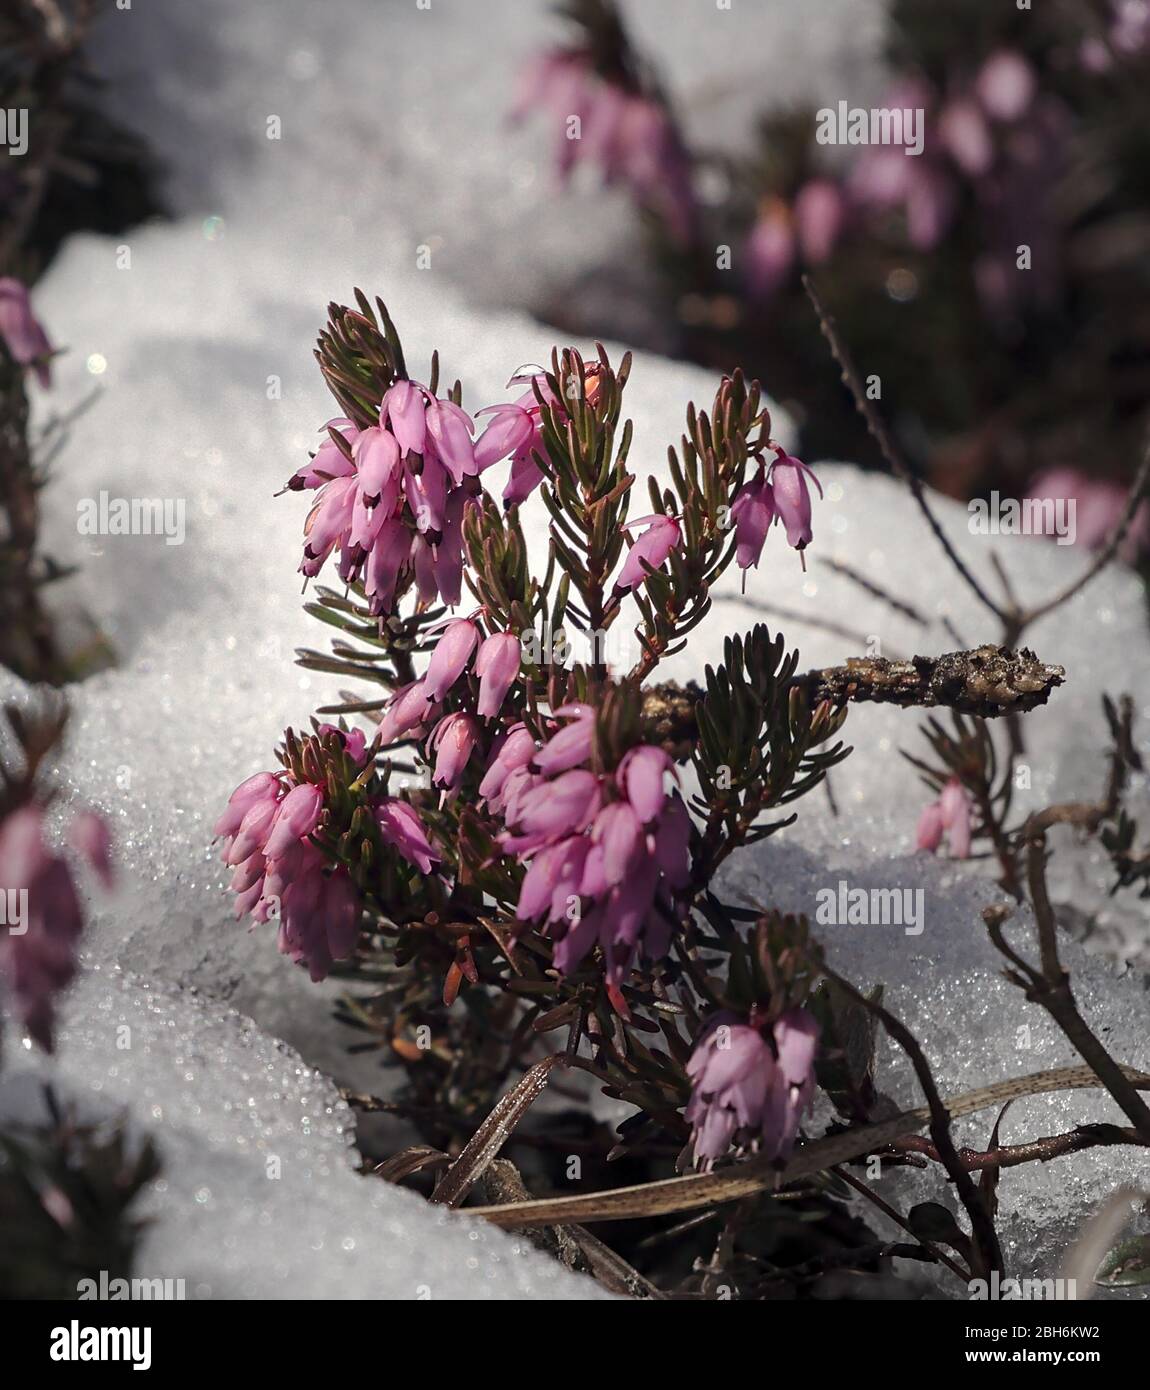 Bruyère violette qui pousse dans la neige avec des fleurs fermées qui se ferment. Banque D'Images